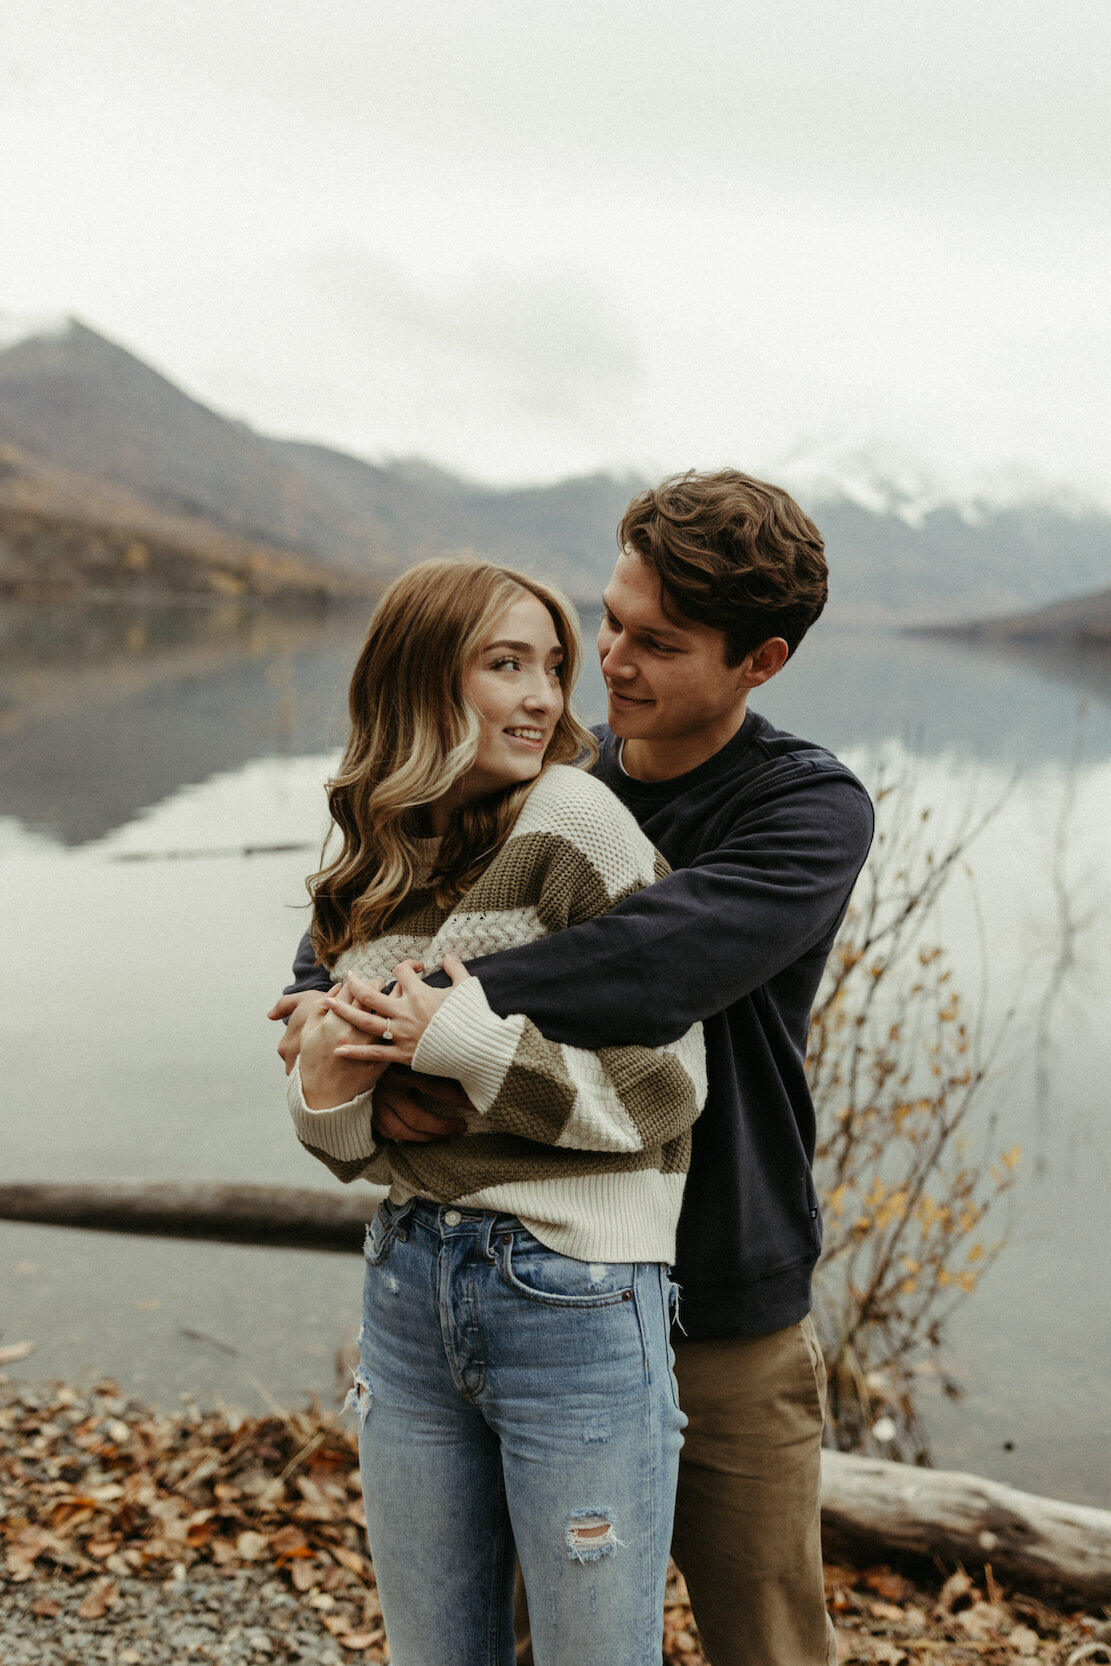 Man holding a woman next to a lake